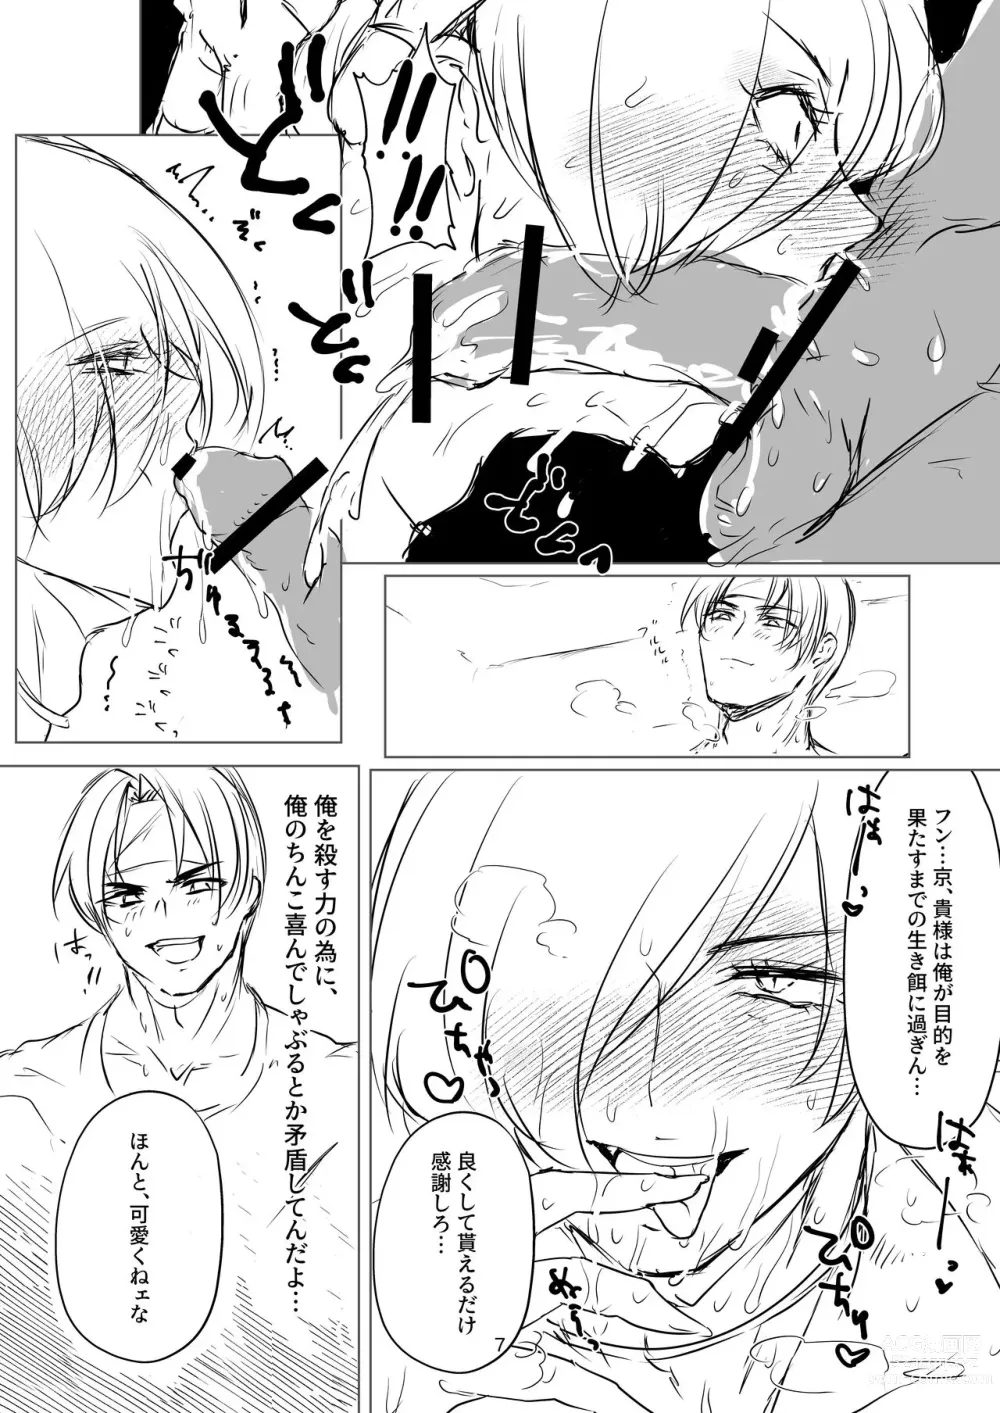 Page 7 of doujinshi R18 Manga EAT ME!